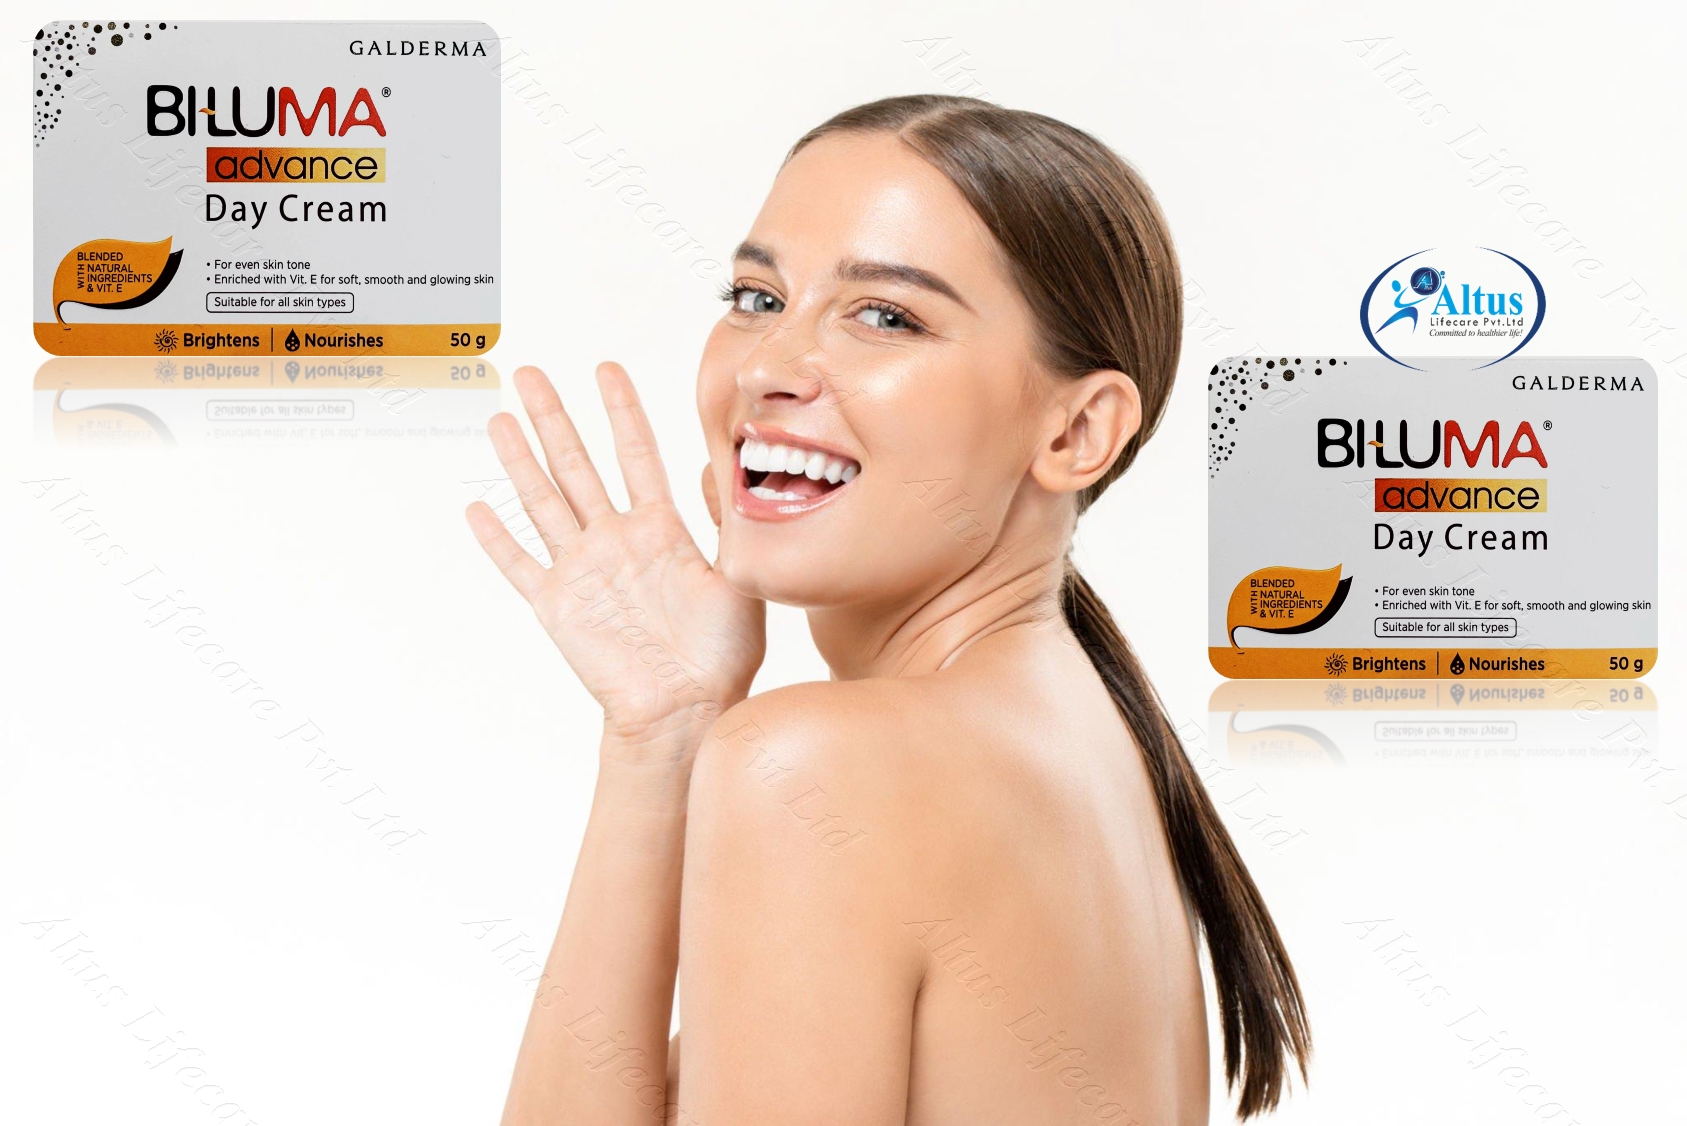 Uneven Skin No More! Transform Your Complexion with Biluma Advance Day Cream!